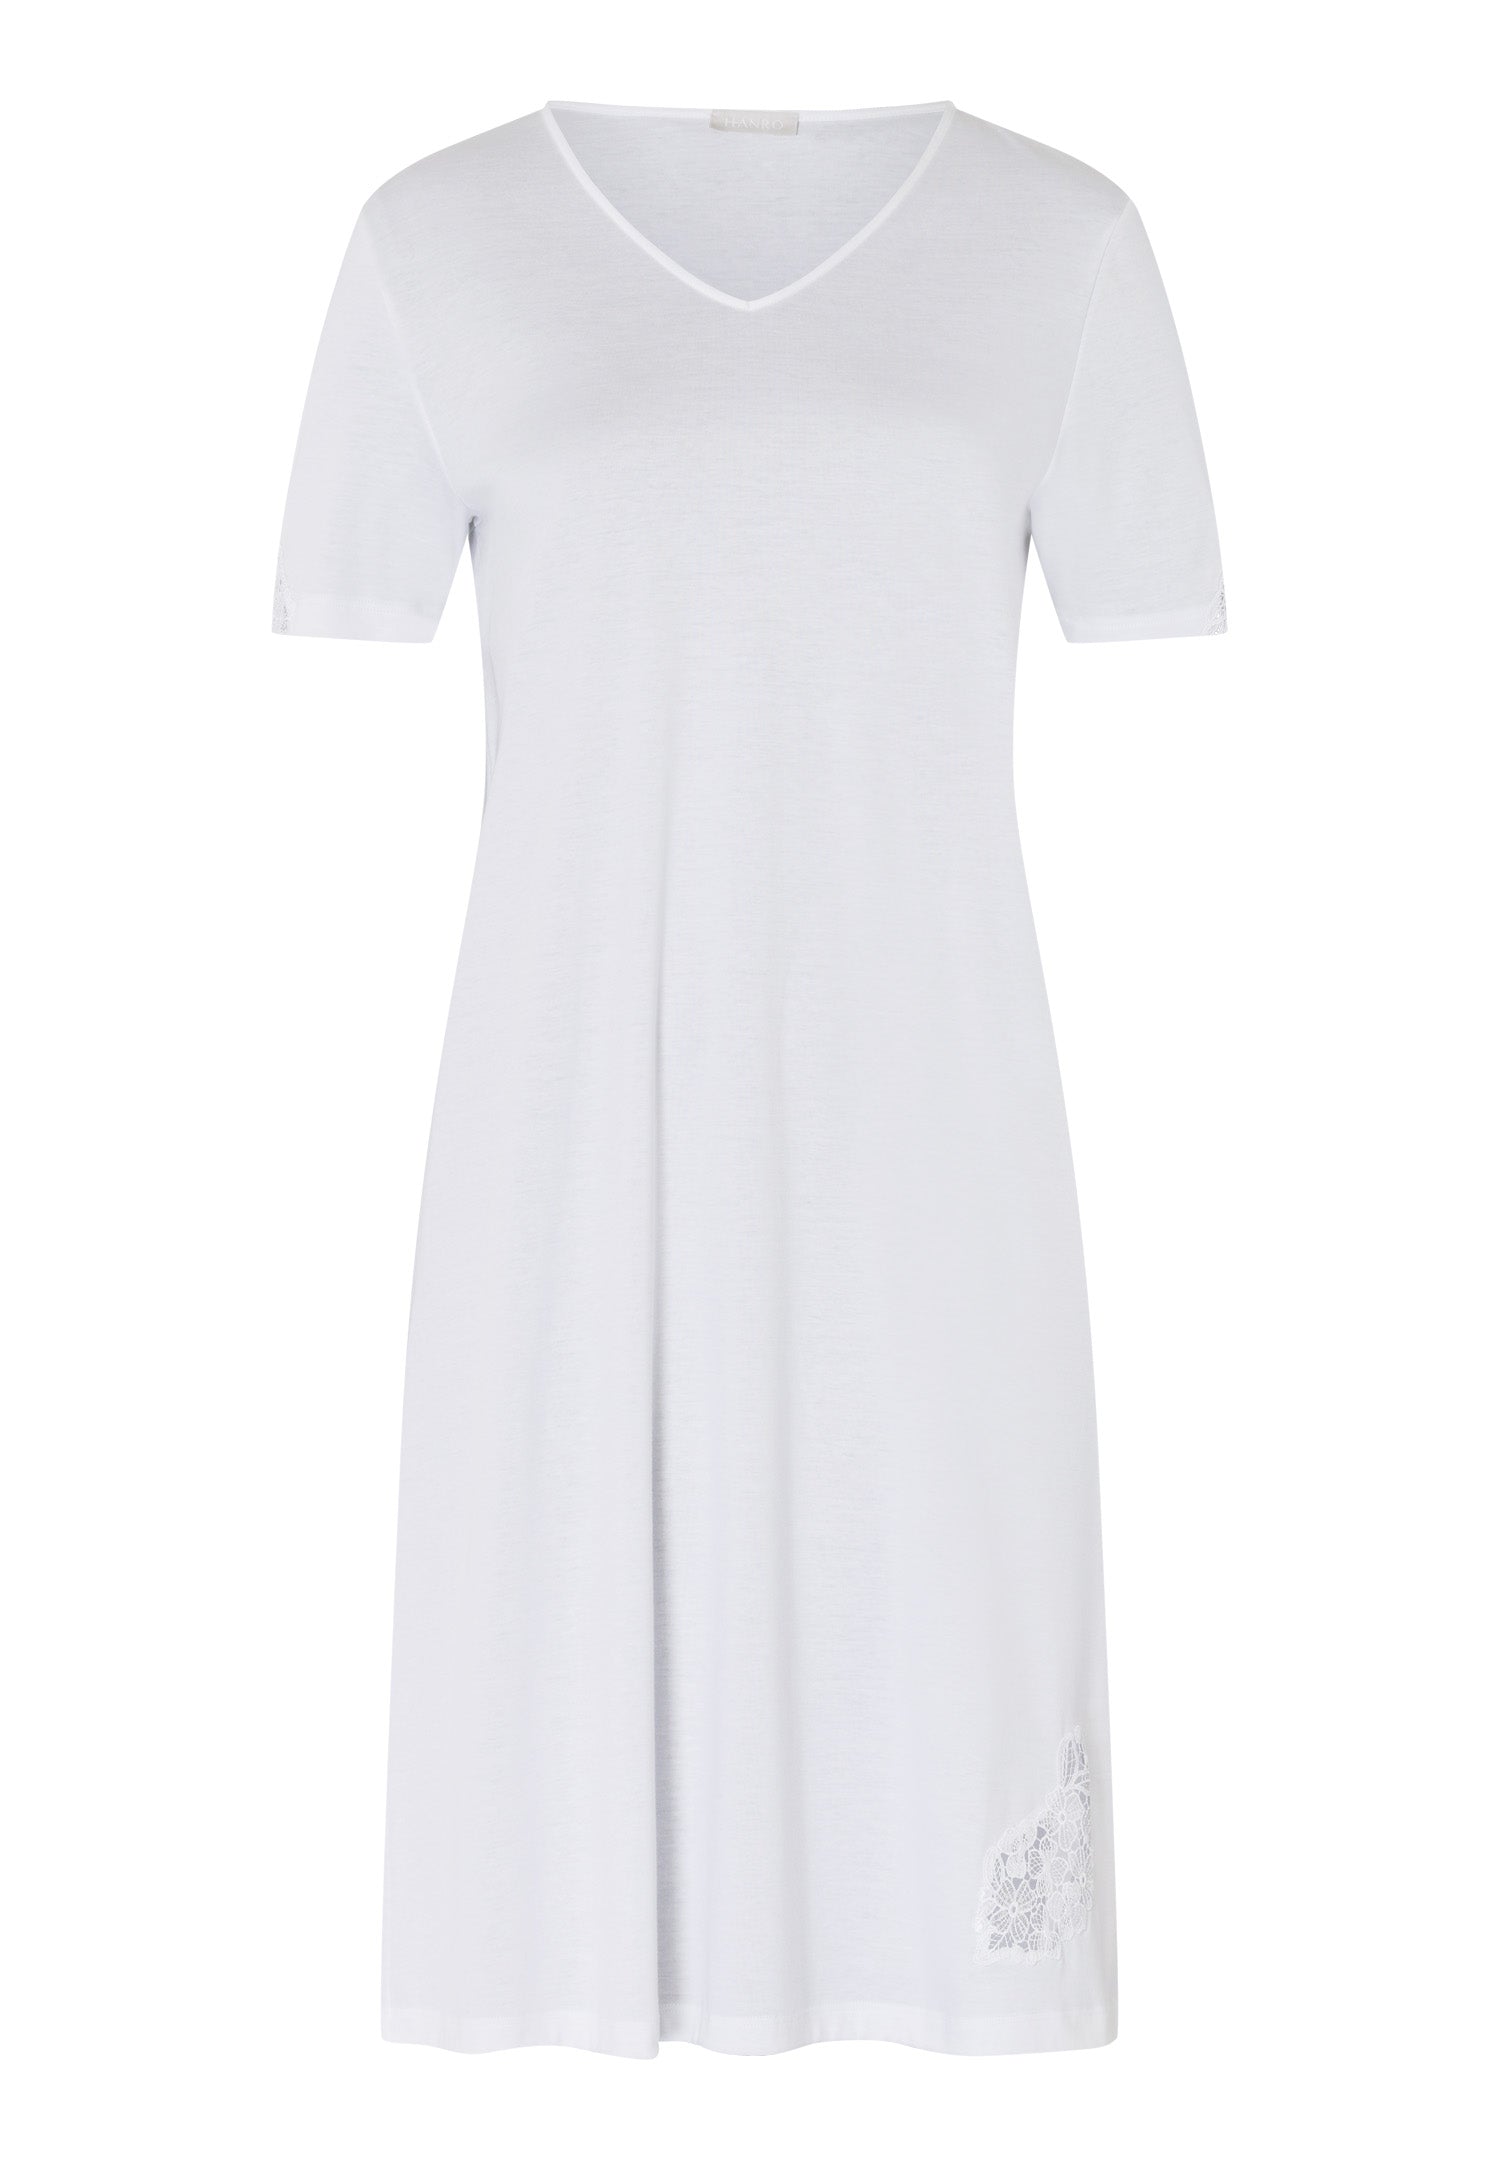 74943 S/Slv Nightgown - 101 White